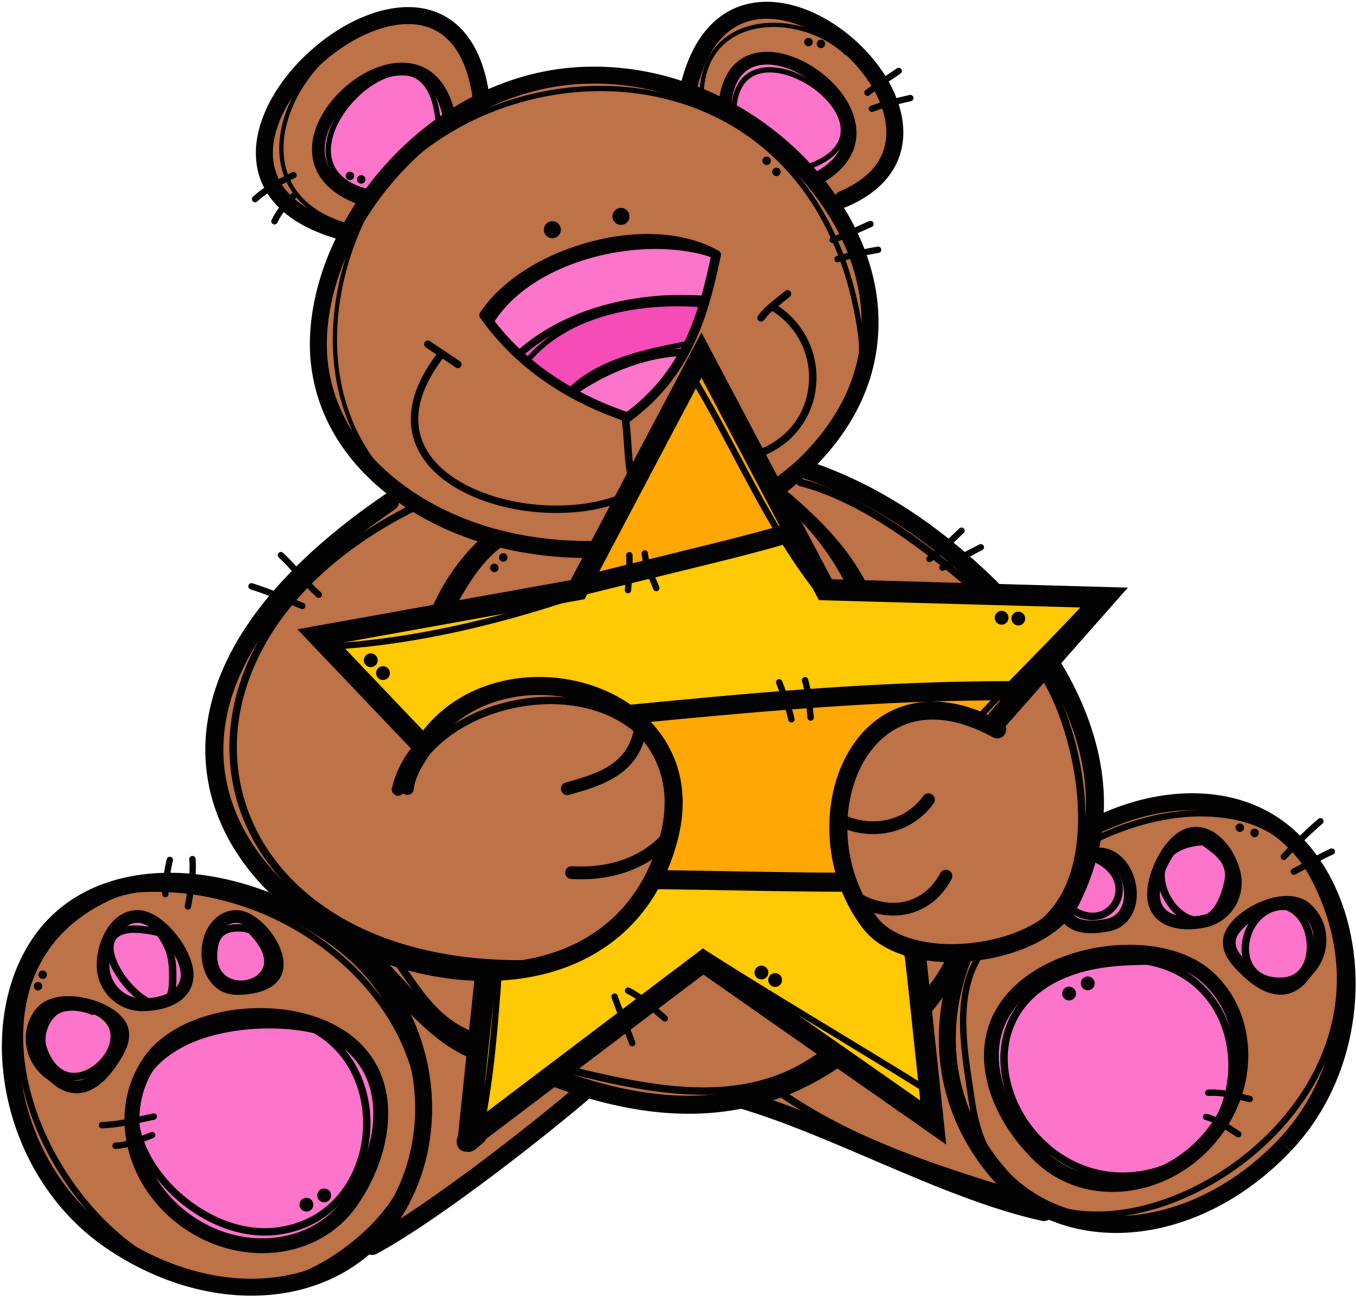 Bears Hugging Stars Clip Art - Clip Art (1447x1455)